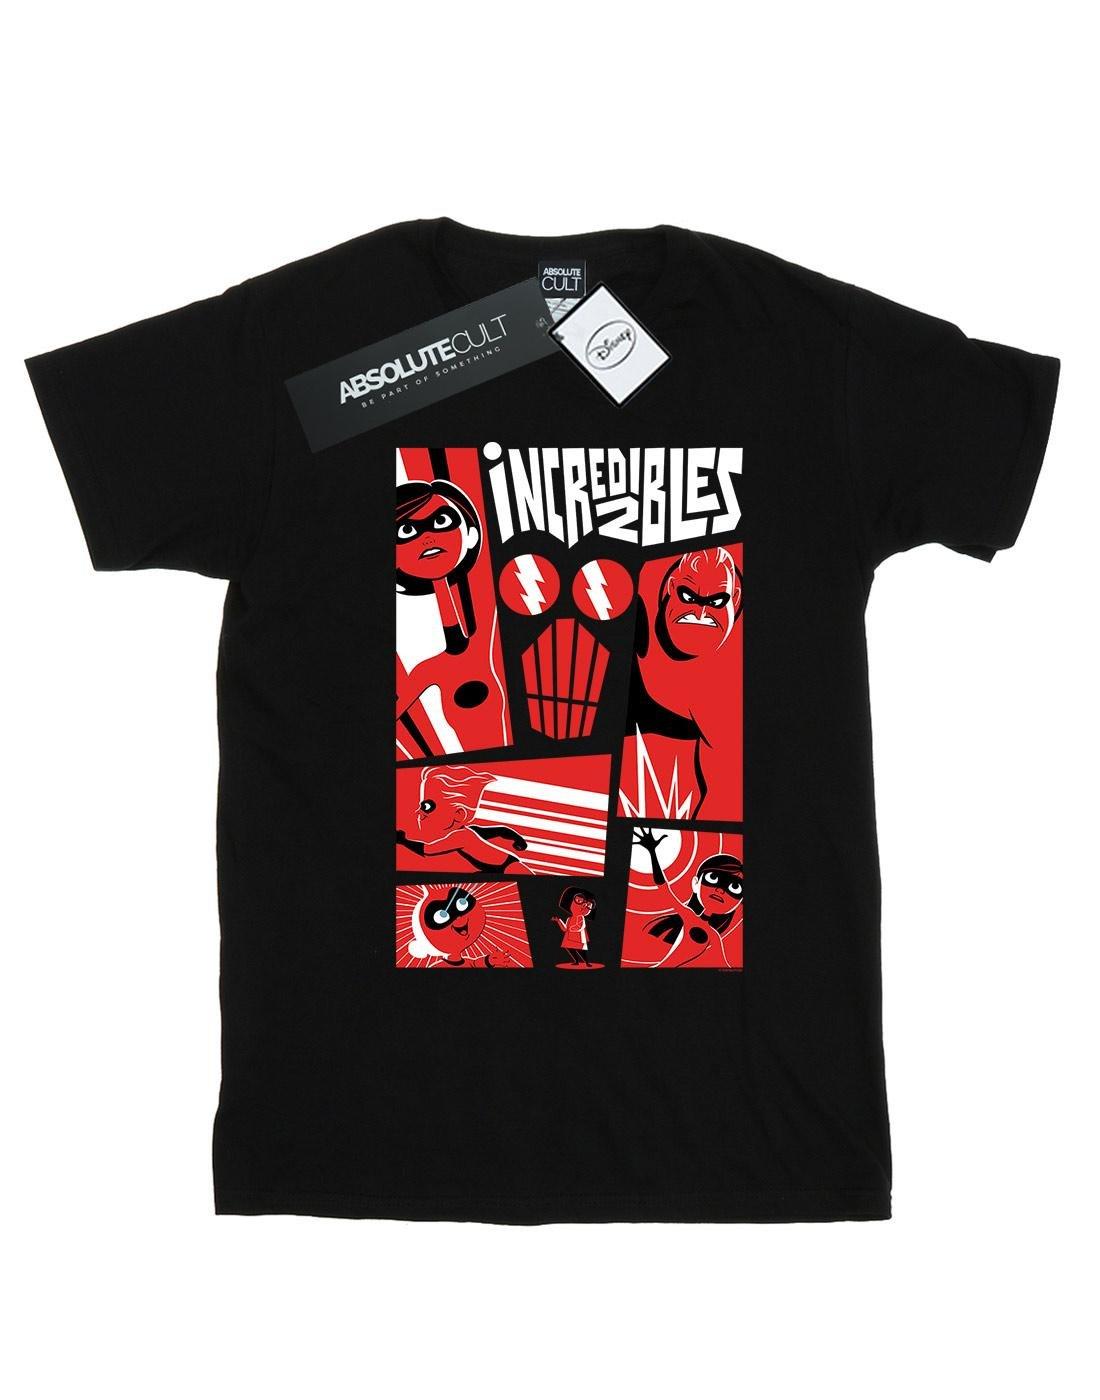 Tshirt Herren Schwarz 3XL von The Incredibles